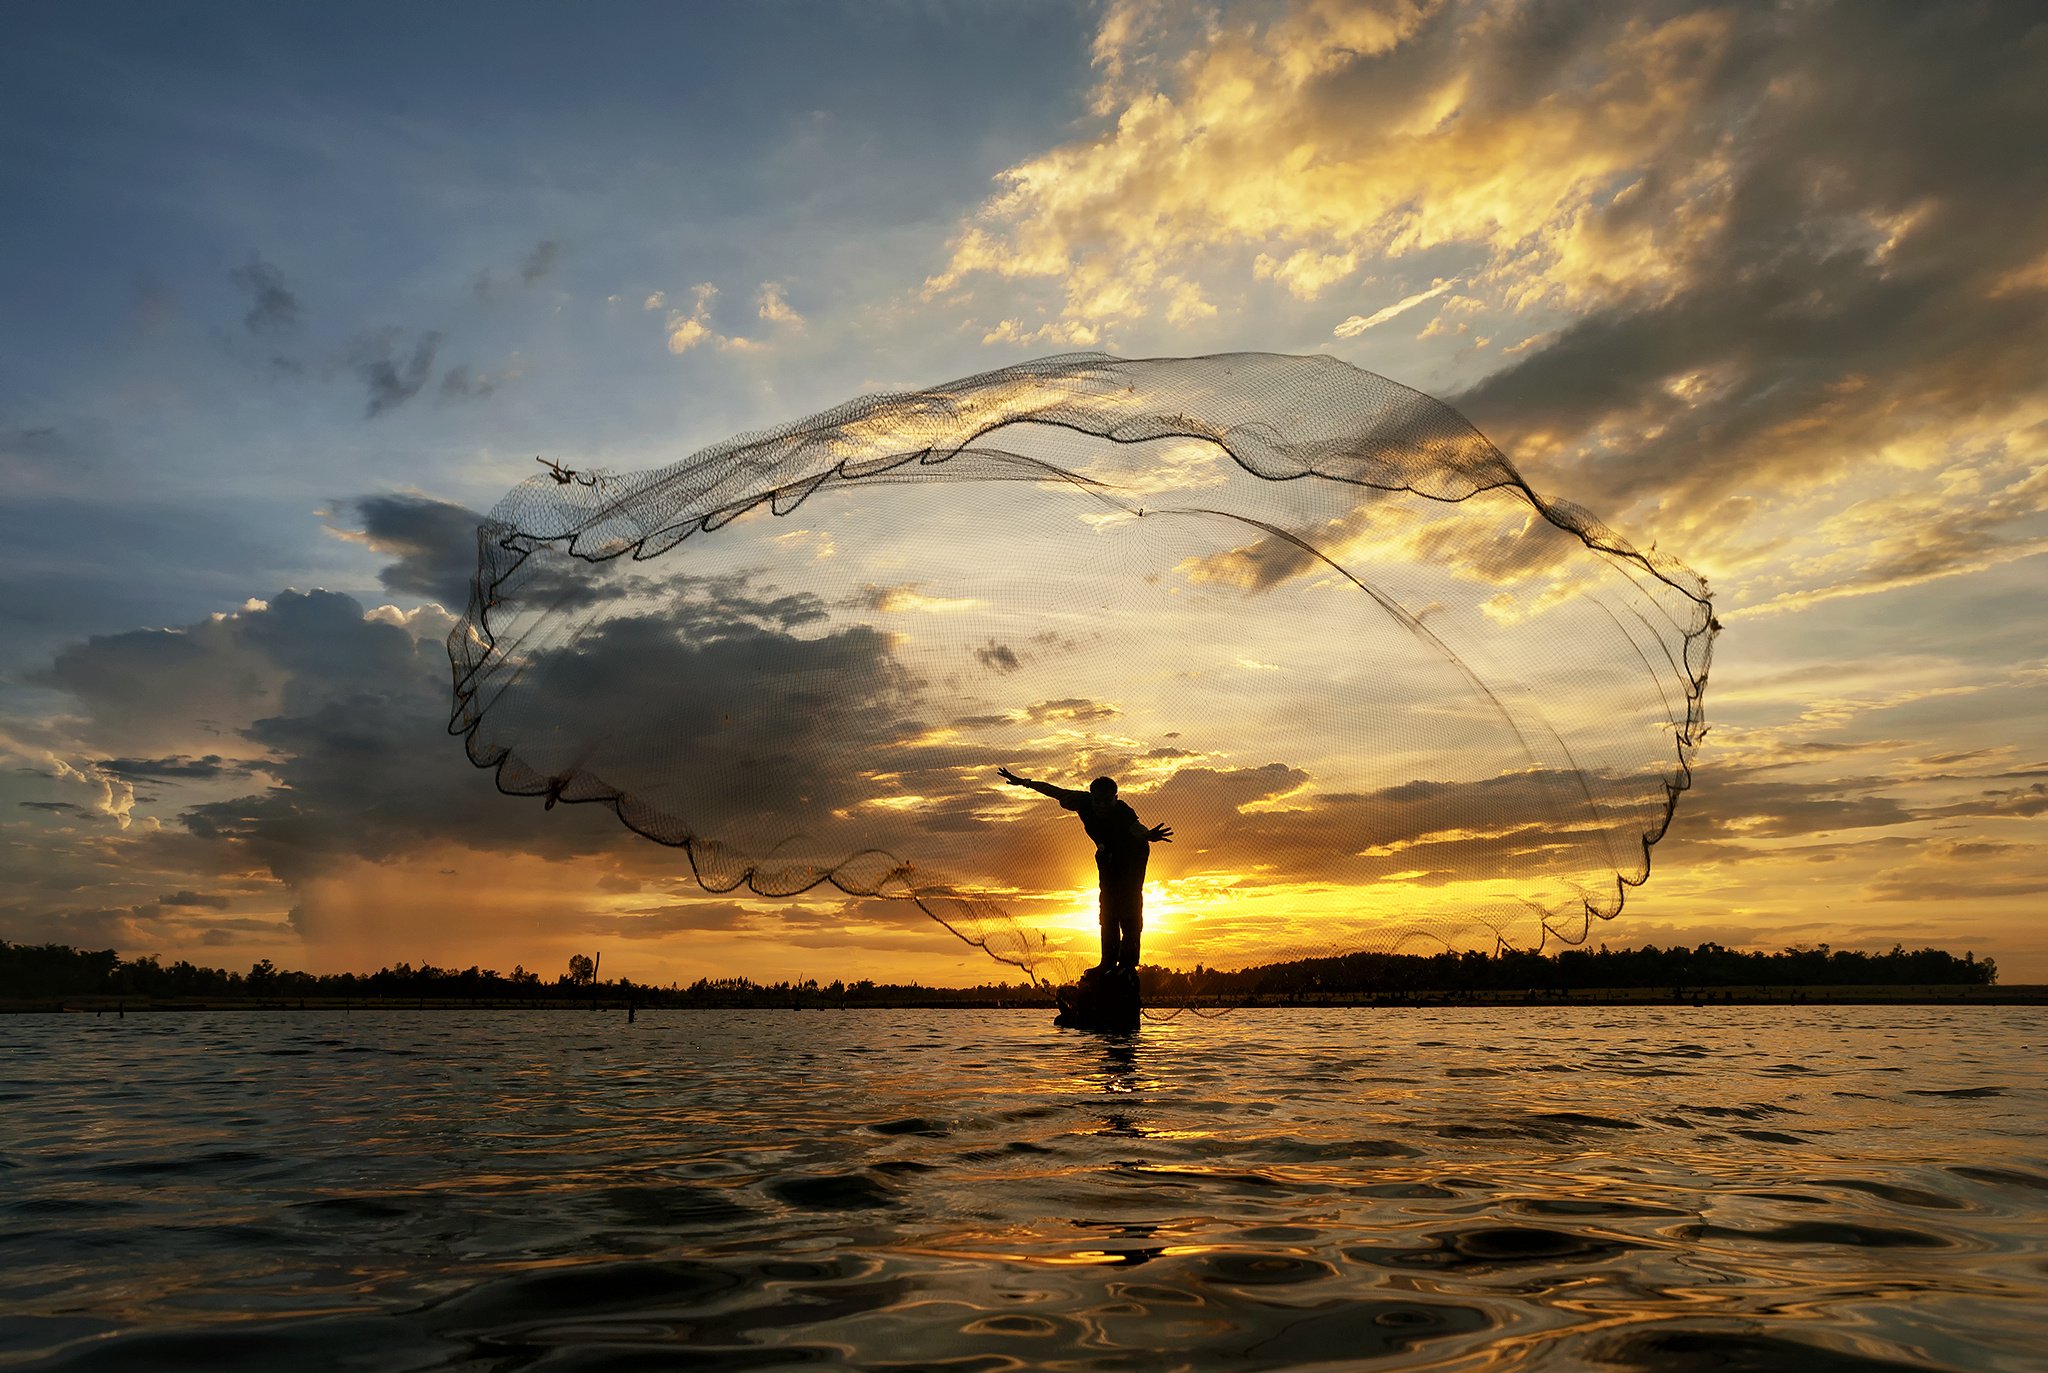 morning, Sunrise, Sun, River, Lake, Boat, Fisherman, Net, Fishing, Mood Wallpaper